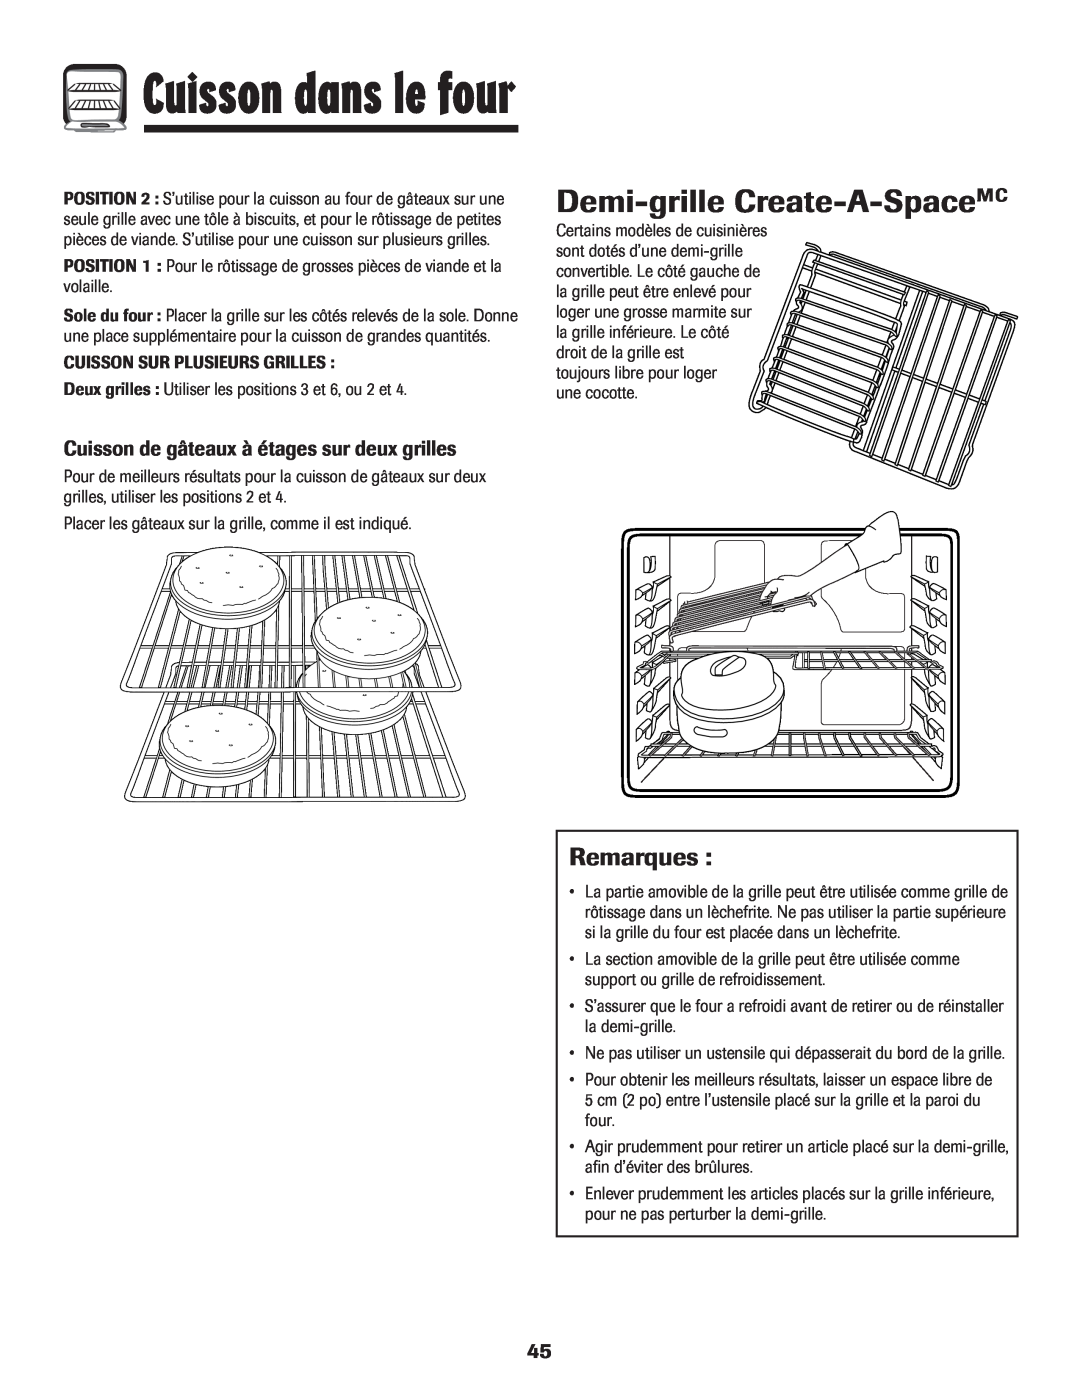 Maytag MGR5775QDW manual Demi-grille Create-A-SpaceMC, Cuisson de gâteaux à étages sur deux grilles, Cuisson dans le four 